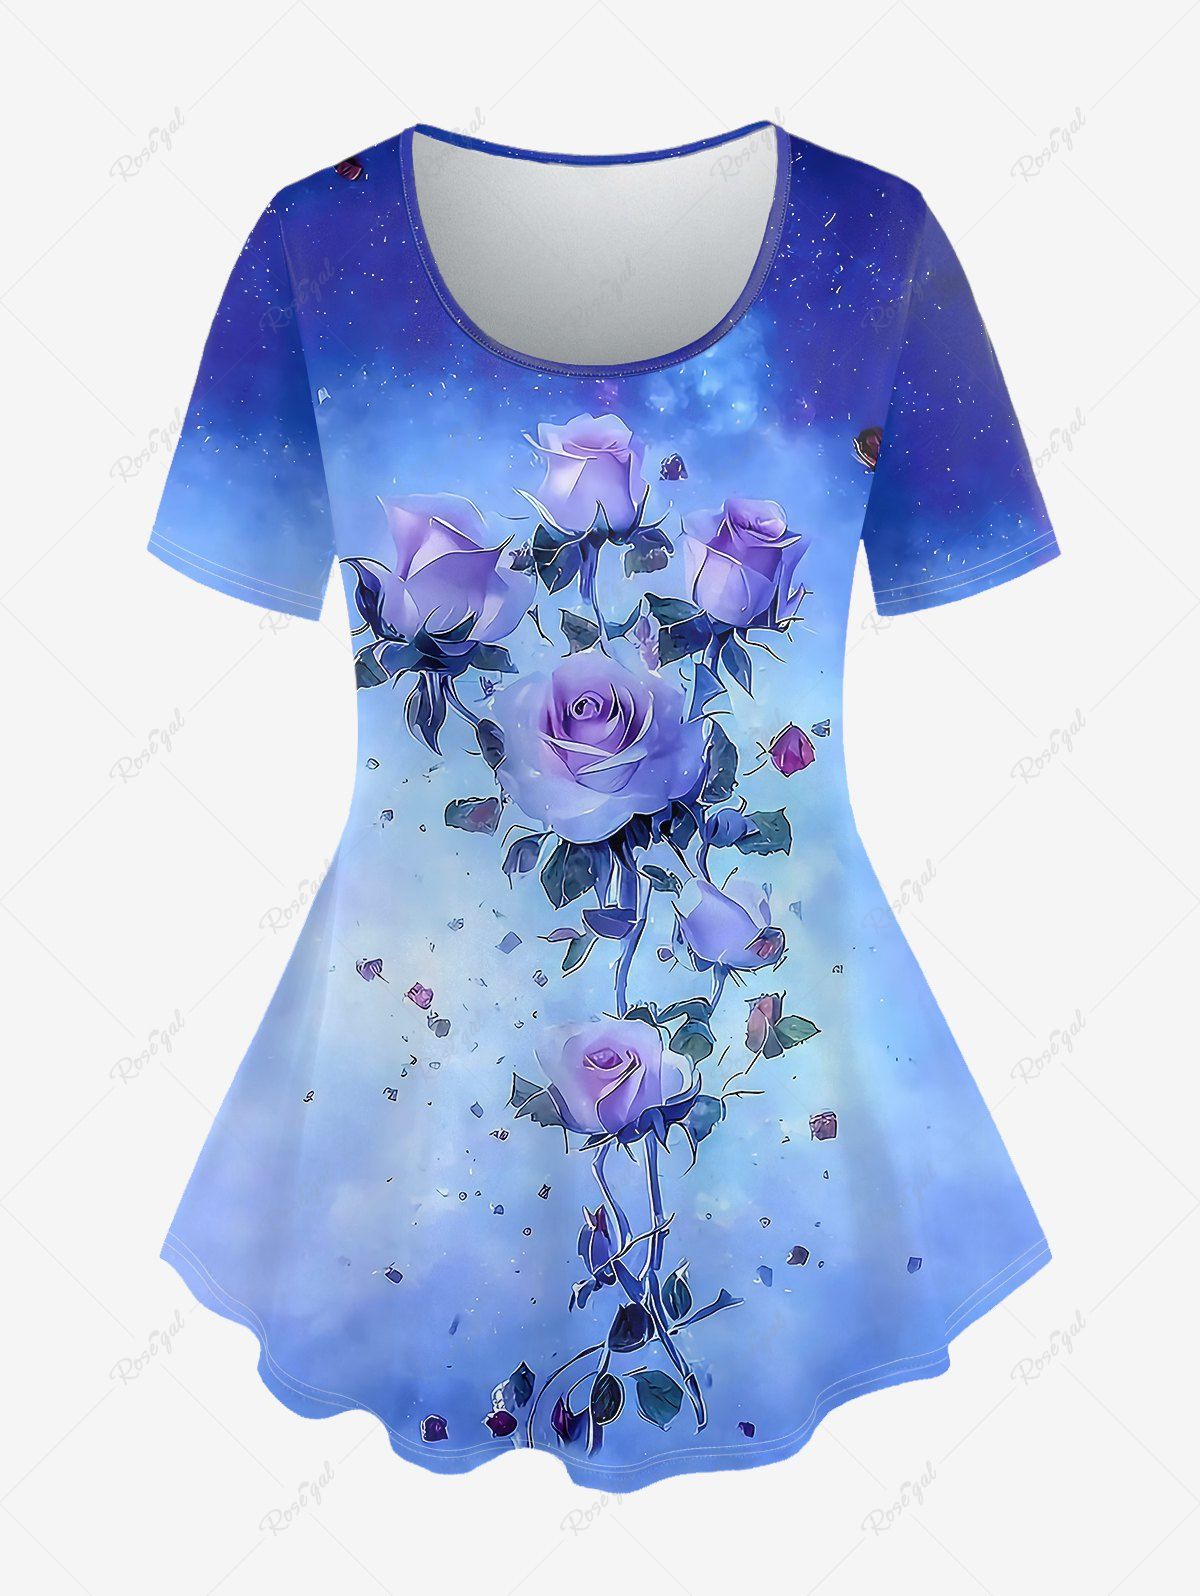 New Plus Size Tie Dye Rose Print T-shirt  